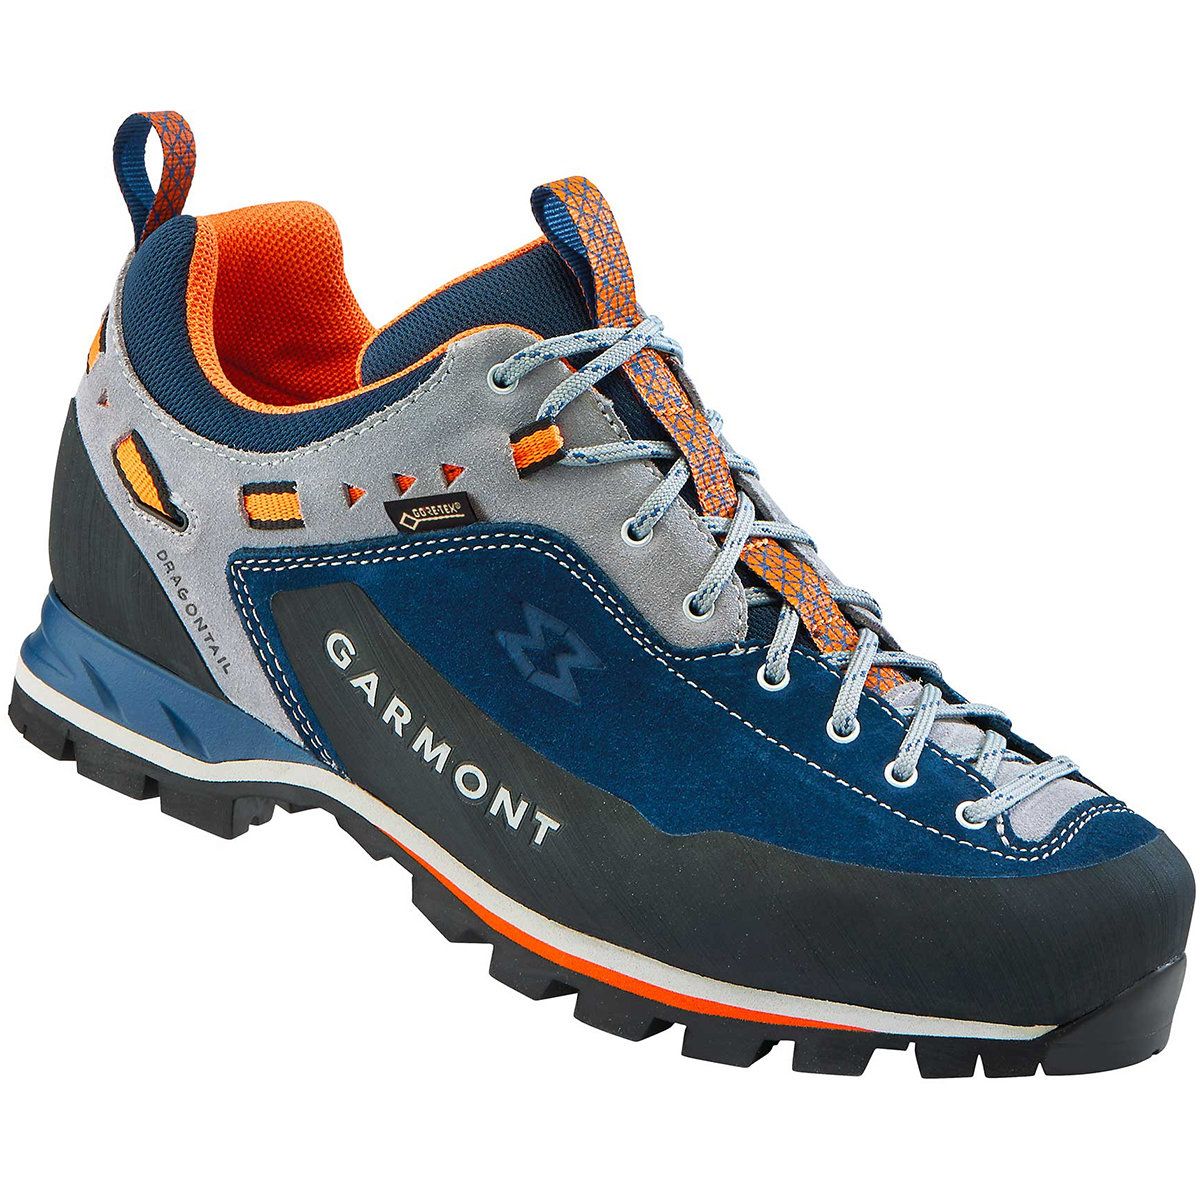 Chaussure de randonnée Dragontail MNT GTX - Blue Orange